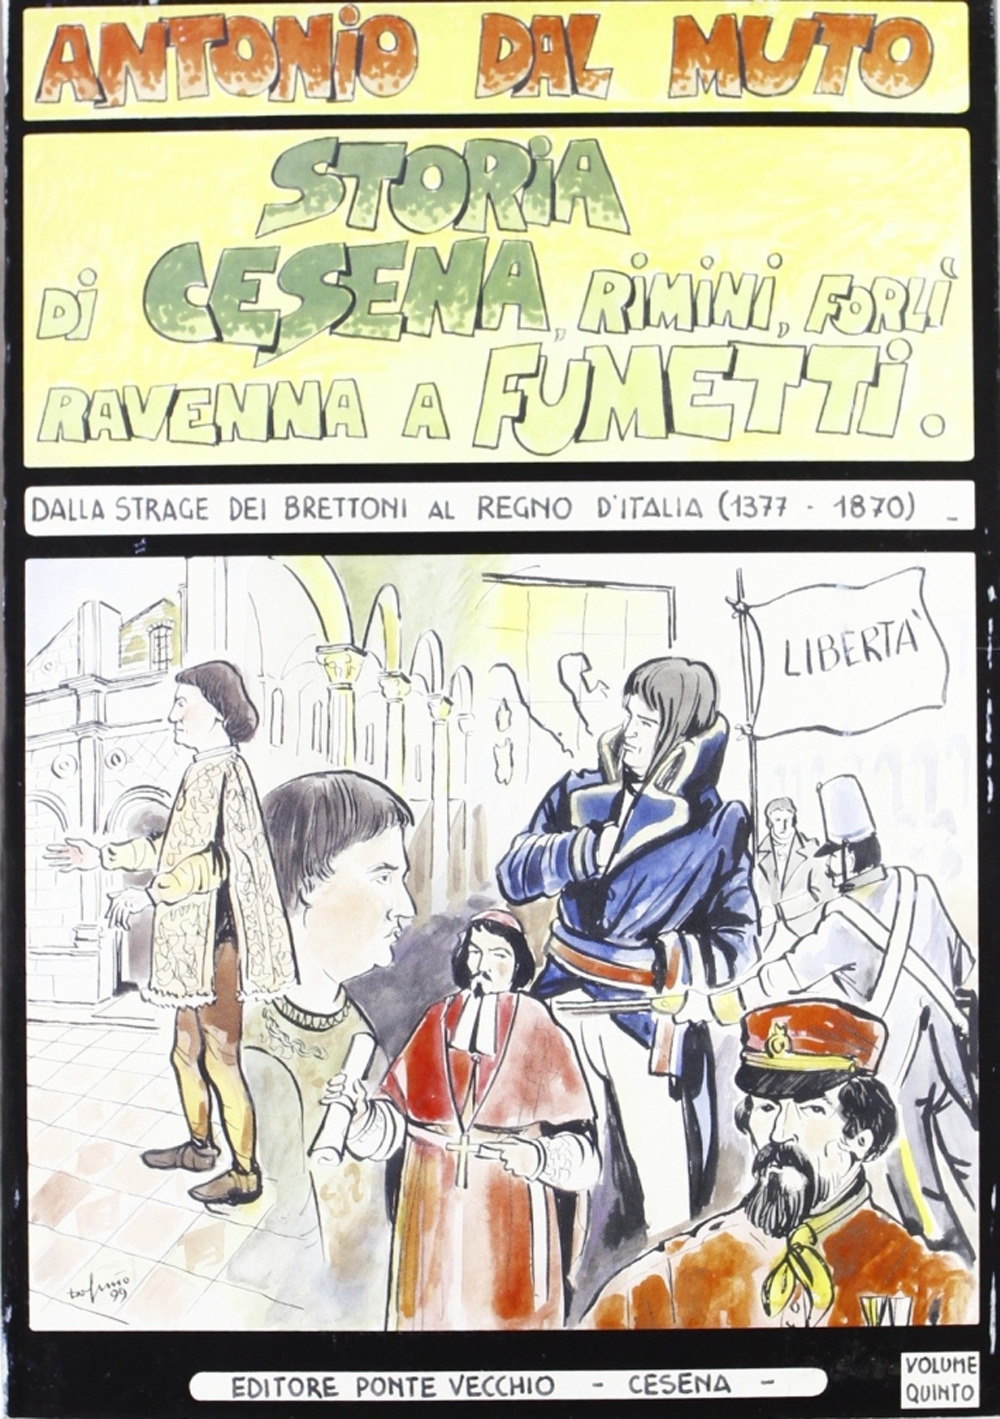 Storia di Cesena, Rimini, Ravenna, Forlì a fumetti. Vol. 5